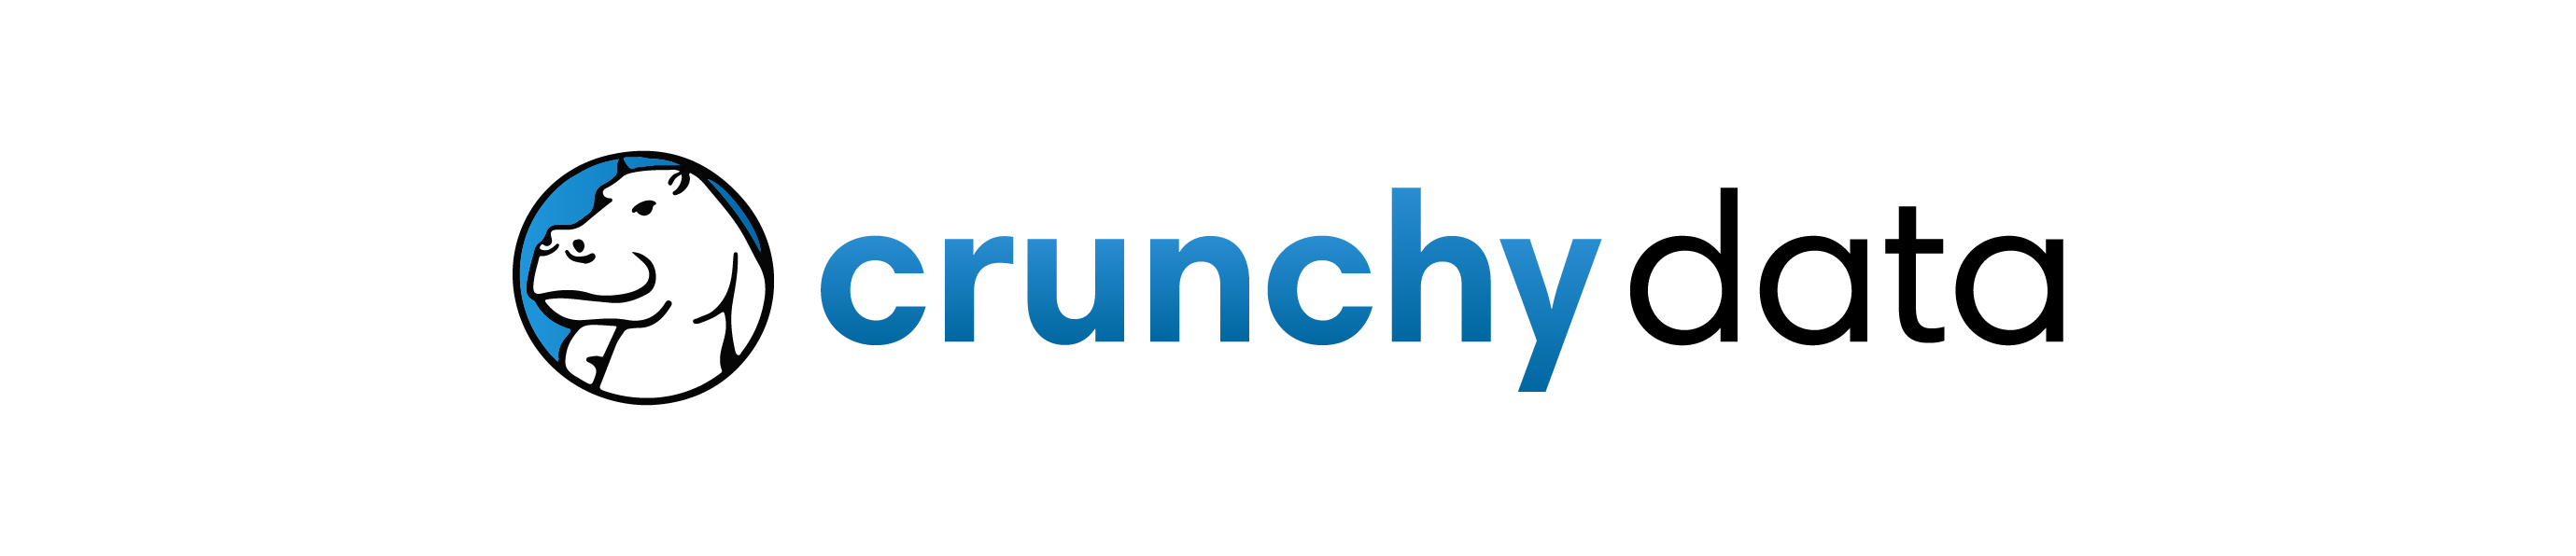 Crunchy Data Marketplace logo